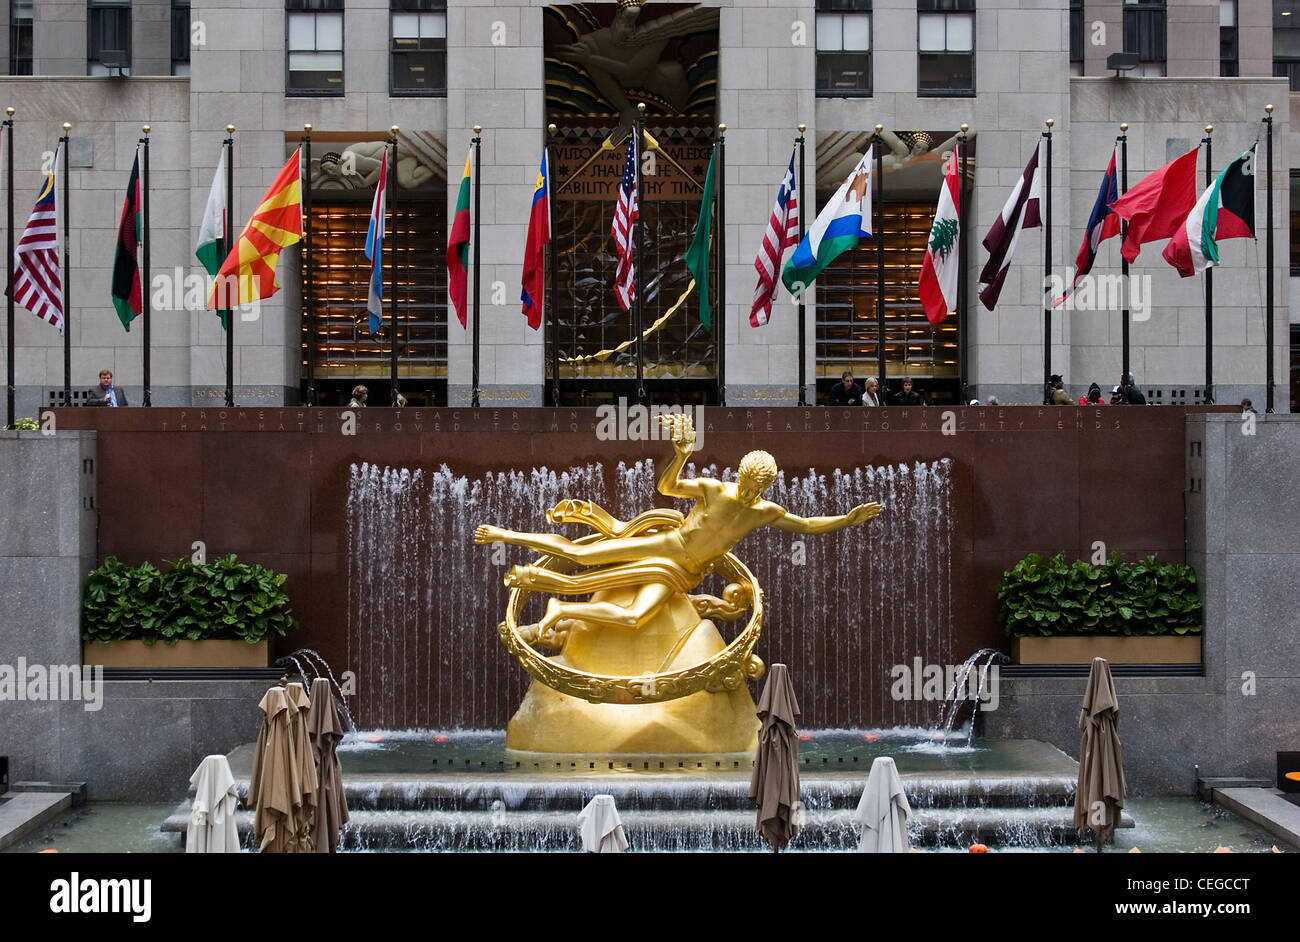 Rockefeller center details, New York City Stock Photo